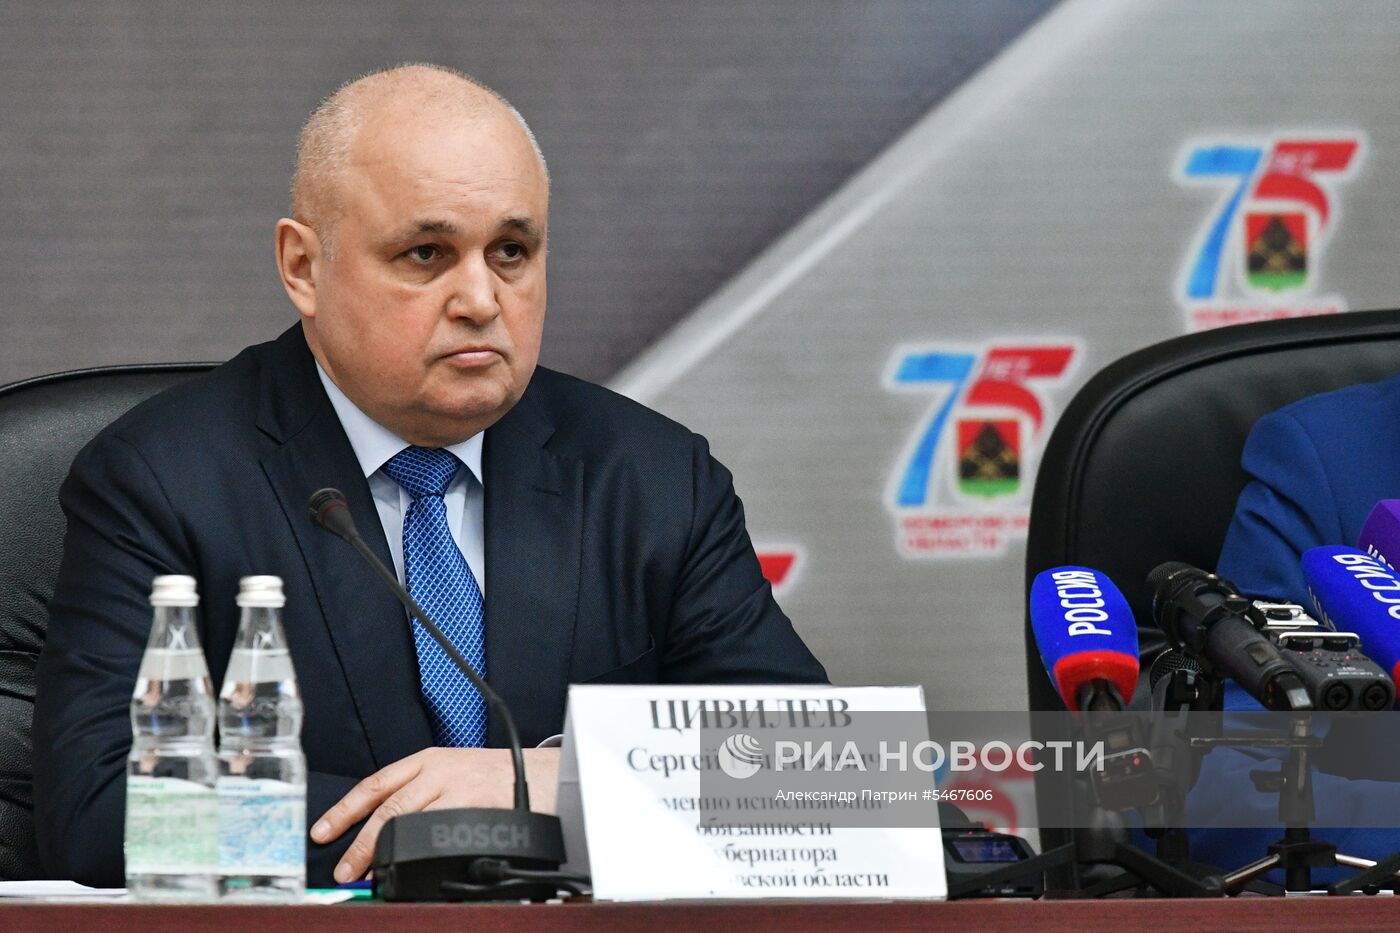 Врио губернатора Кемеровской области С. Цивилев представлен властям региона